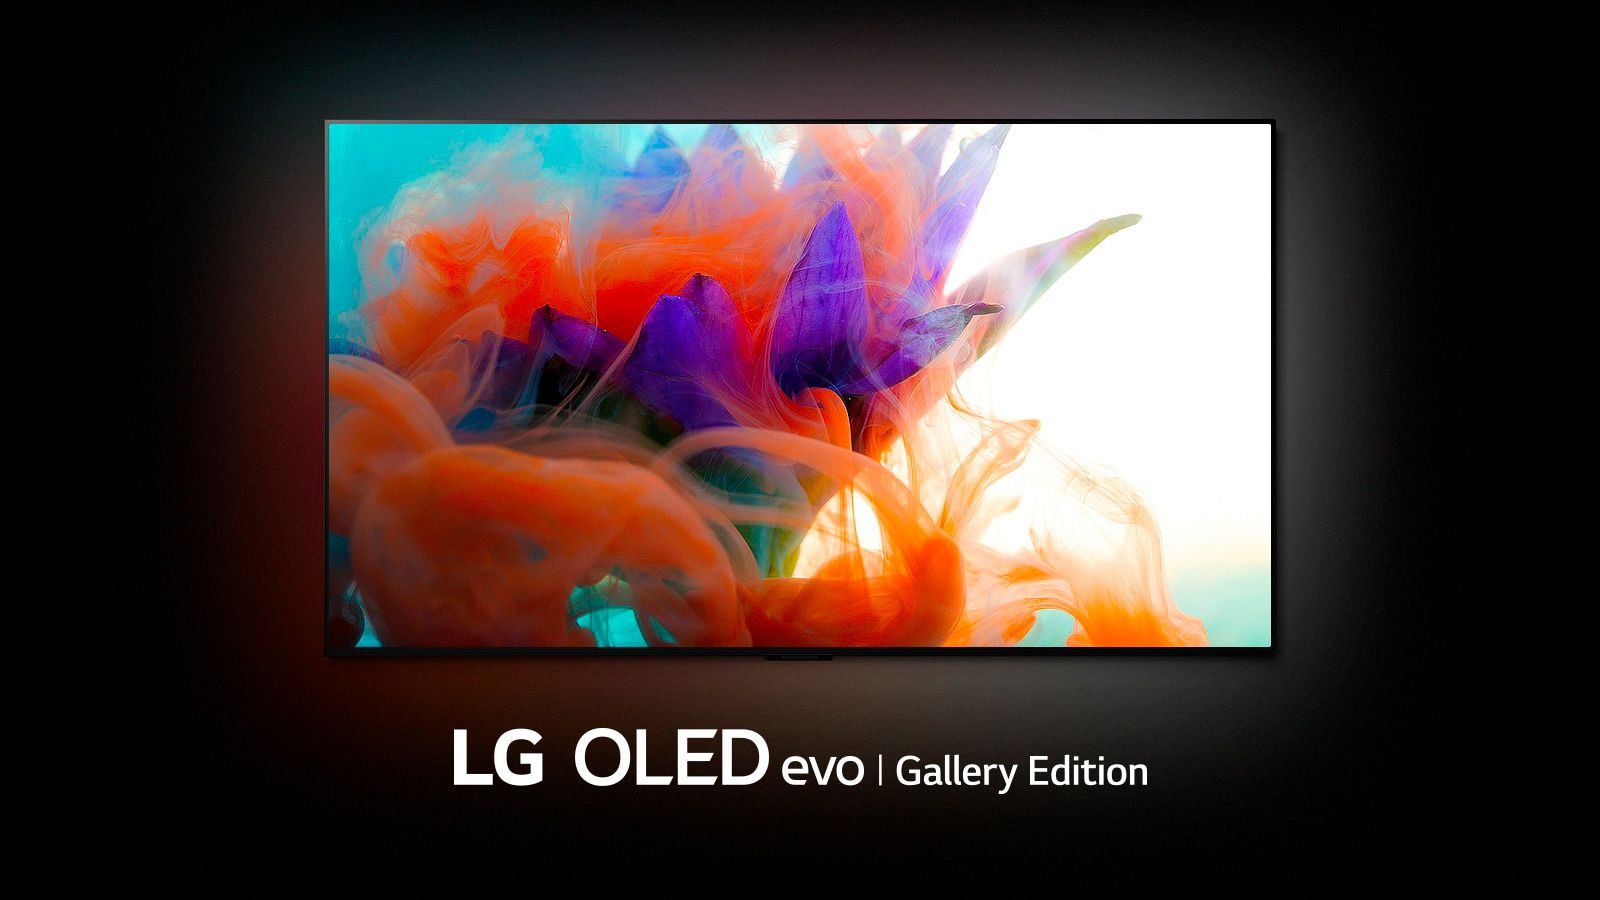 El Corte Inglés destroza el precio de la LG OLED G2 de 77 pulgadas, ofertaza para un televisor de bandera